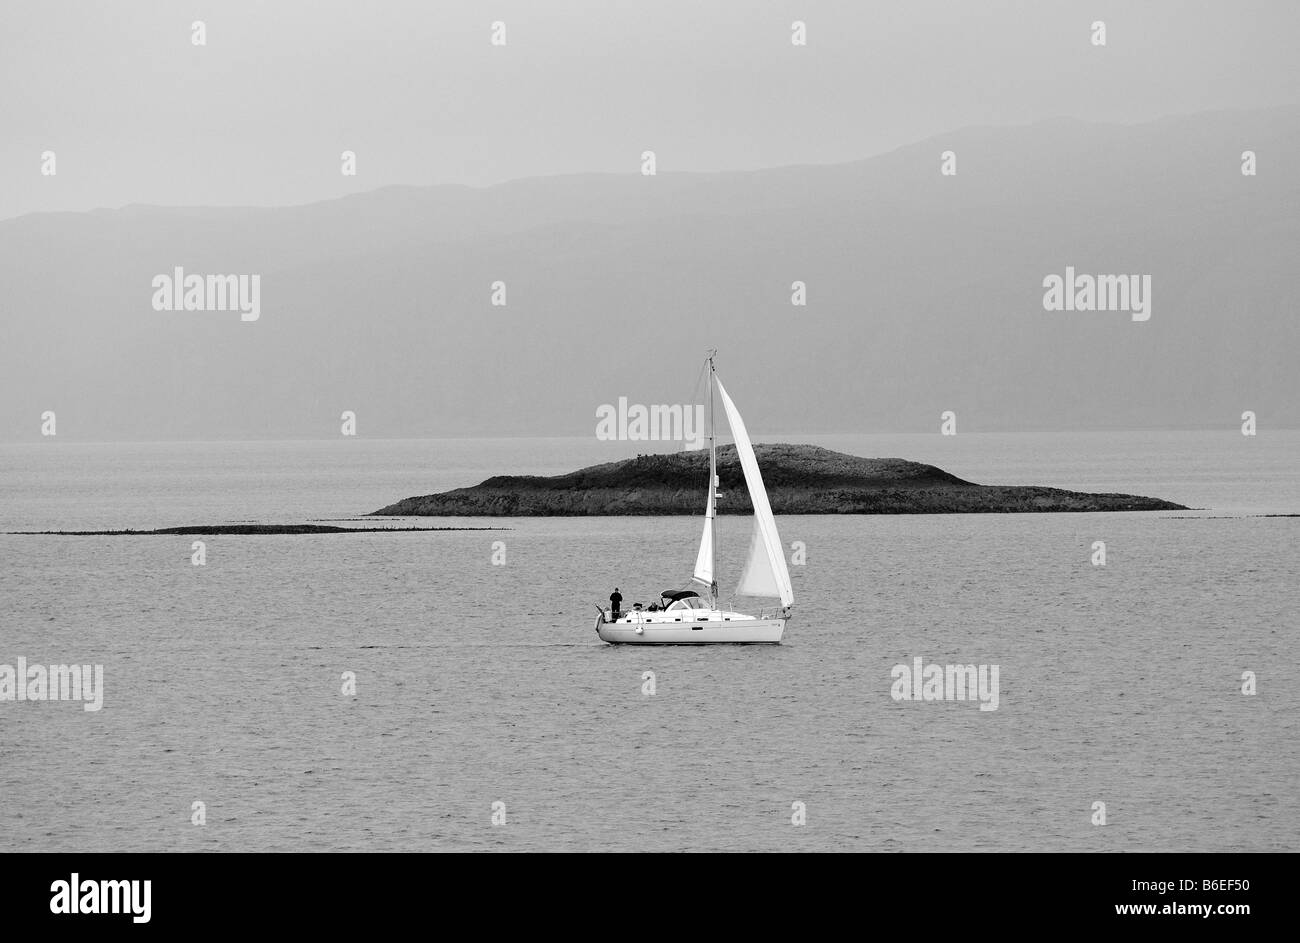 Un lujoso yate velero capturas brisa fuerte como se navega a través del océano abierto de islas rocosas en el fondo libertad Foto de stock